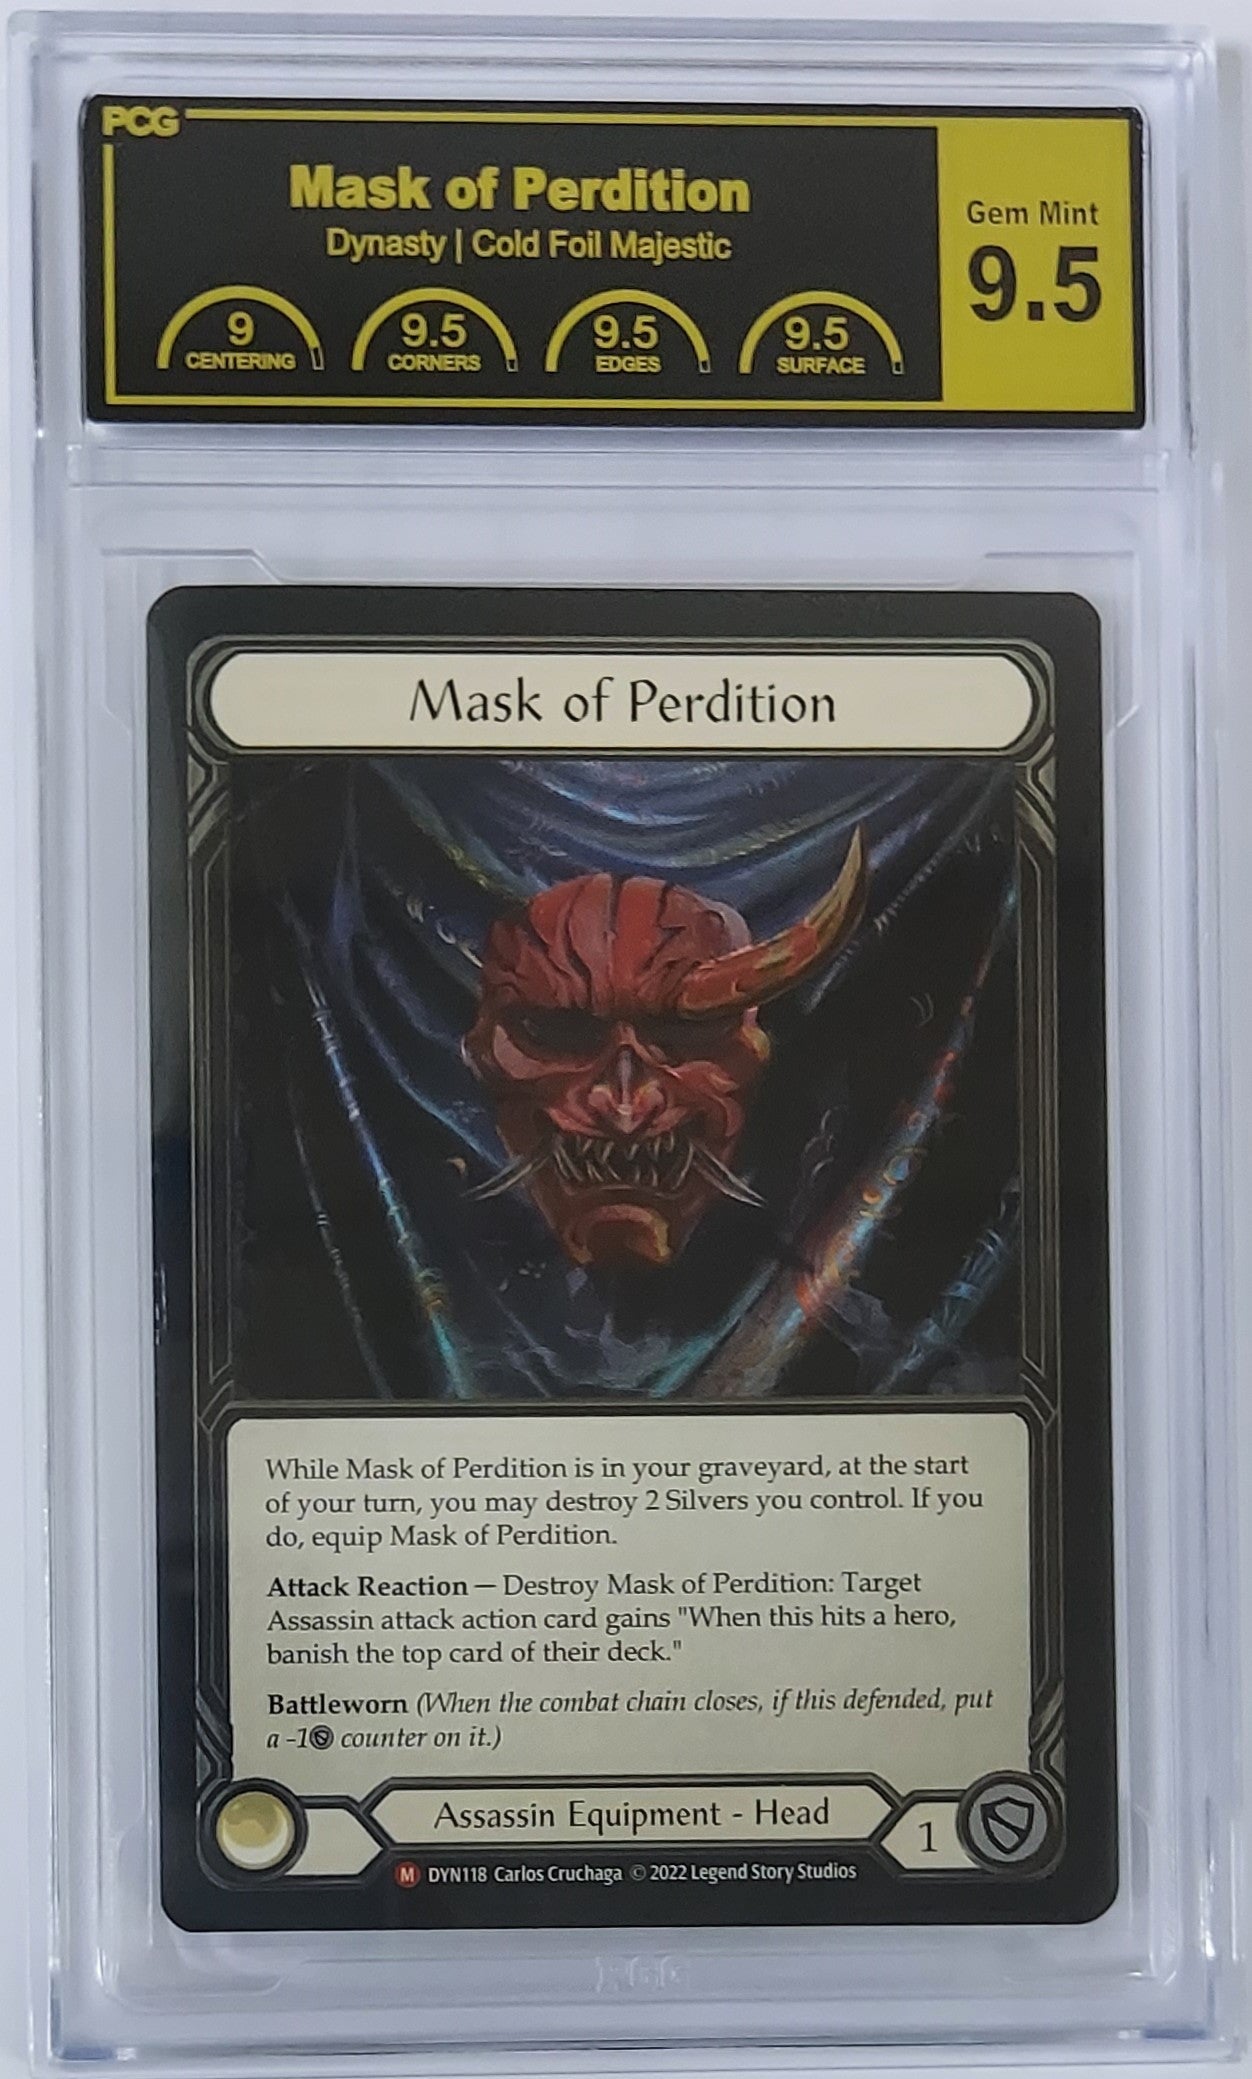 [PCG 9.5] [CF] Mask of Perdition - DYN118